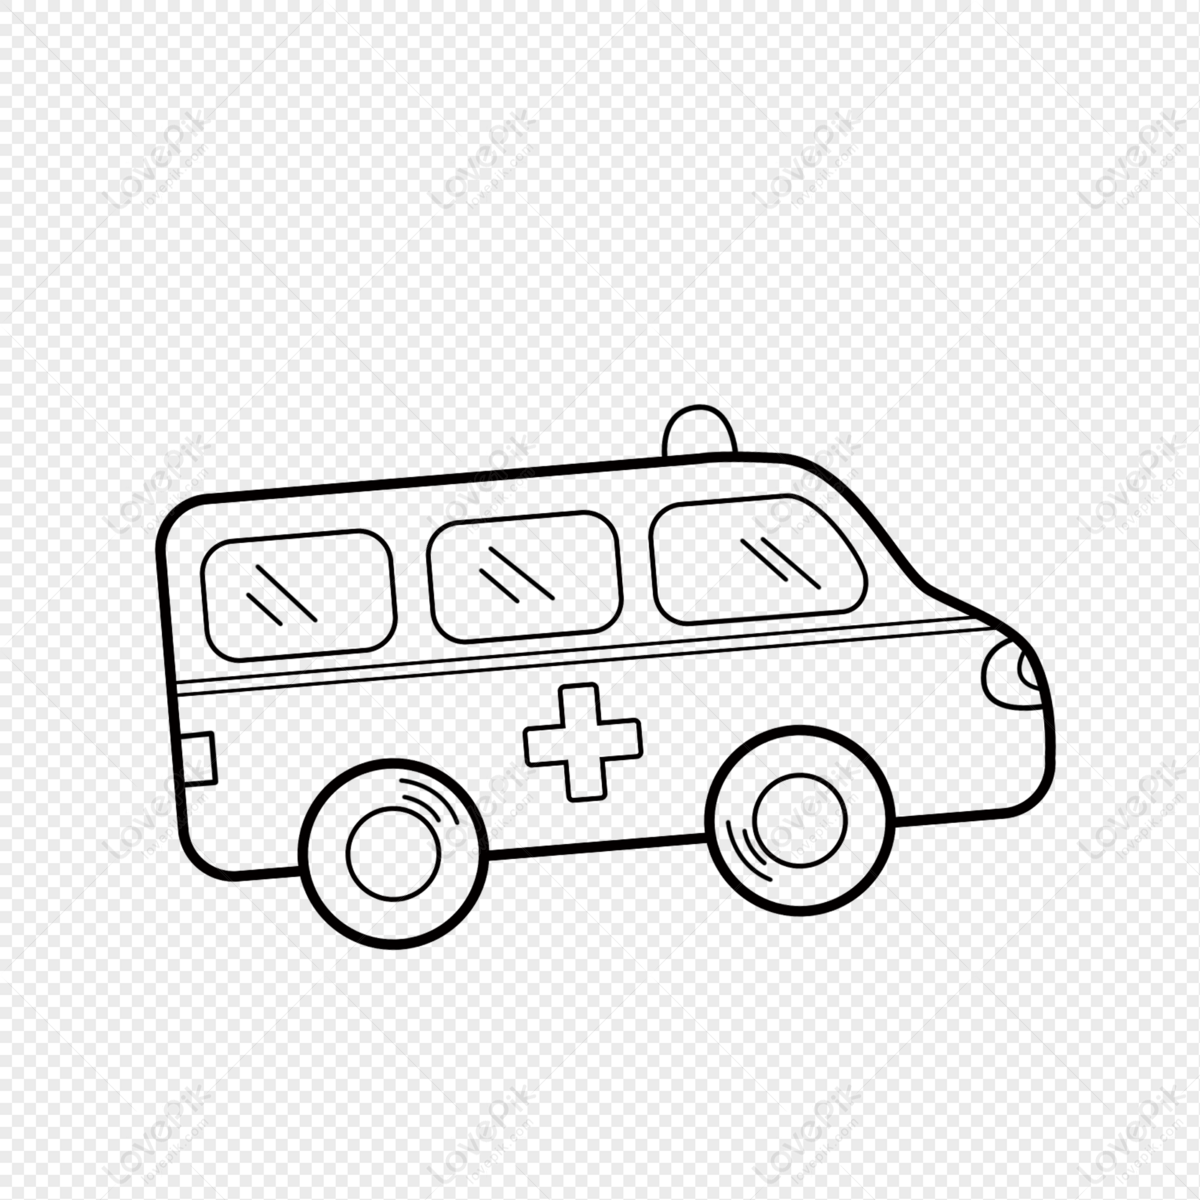 Draw and Coloring Ambulance - Tập vẽ và tô màu xe cấp cứu - YouTube